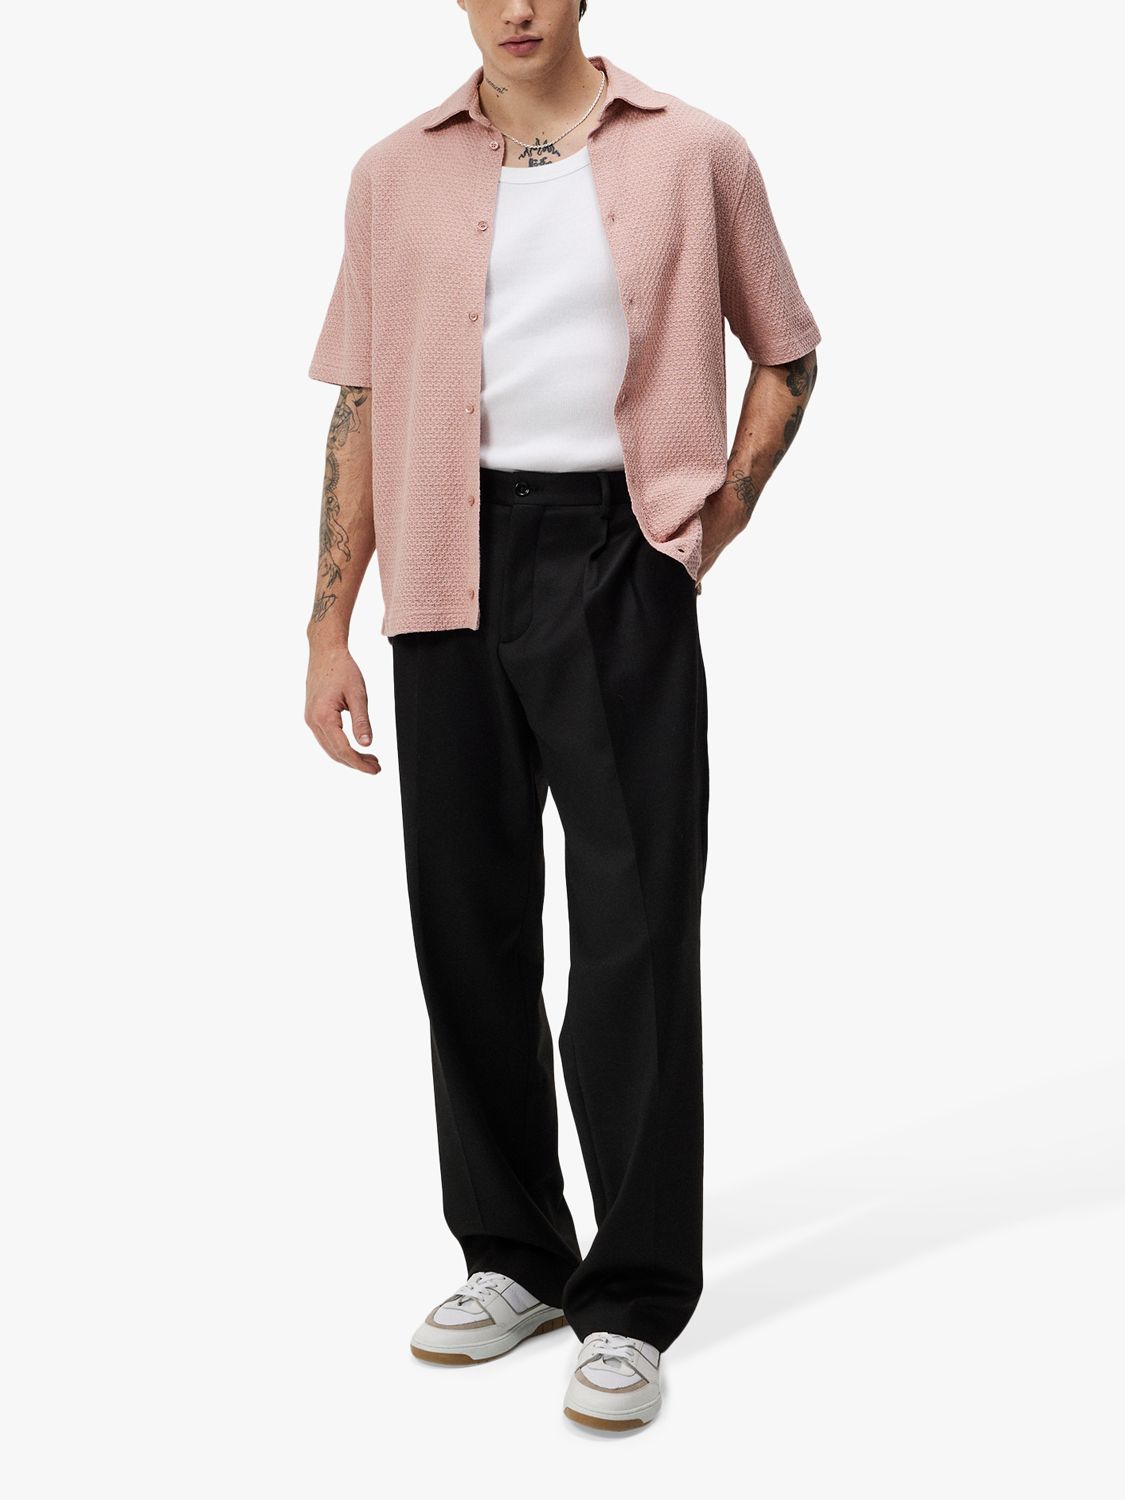 J.Lindeberg Torpa Airy Short Sleeve Shirt, Powder Pink, S